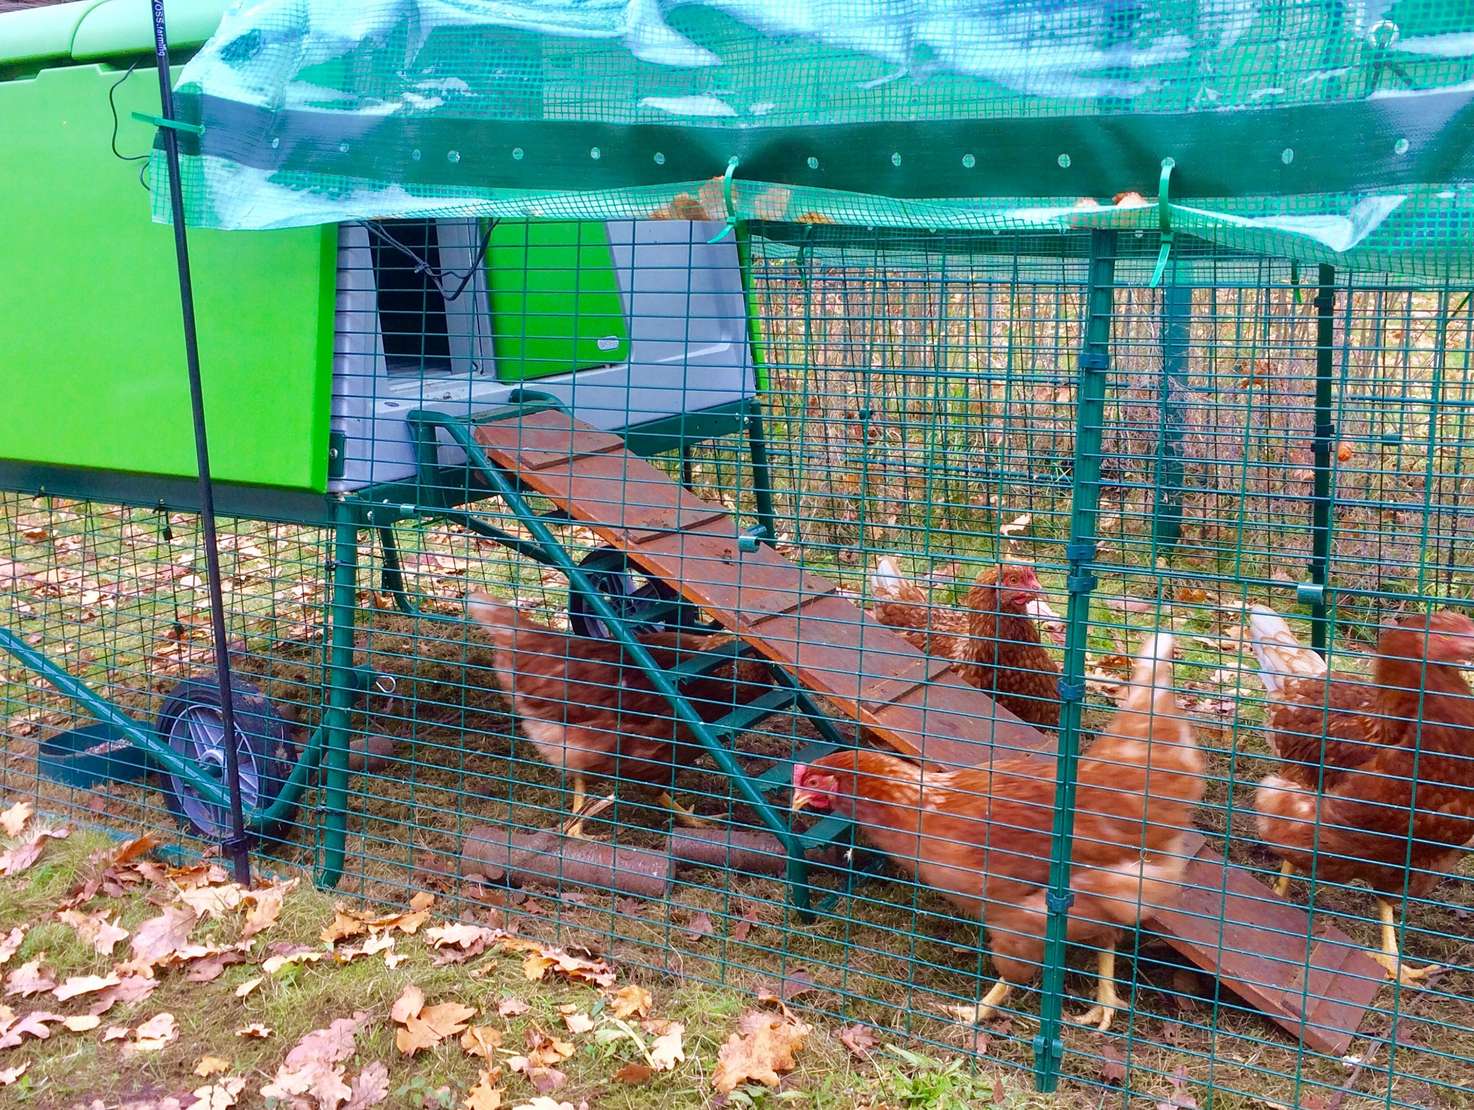 Ein neues Zuhause für die Kita-Hühner